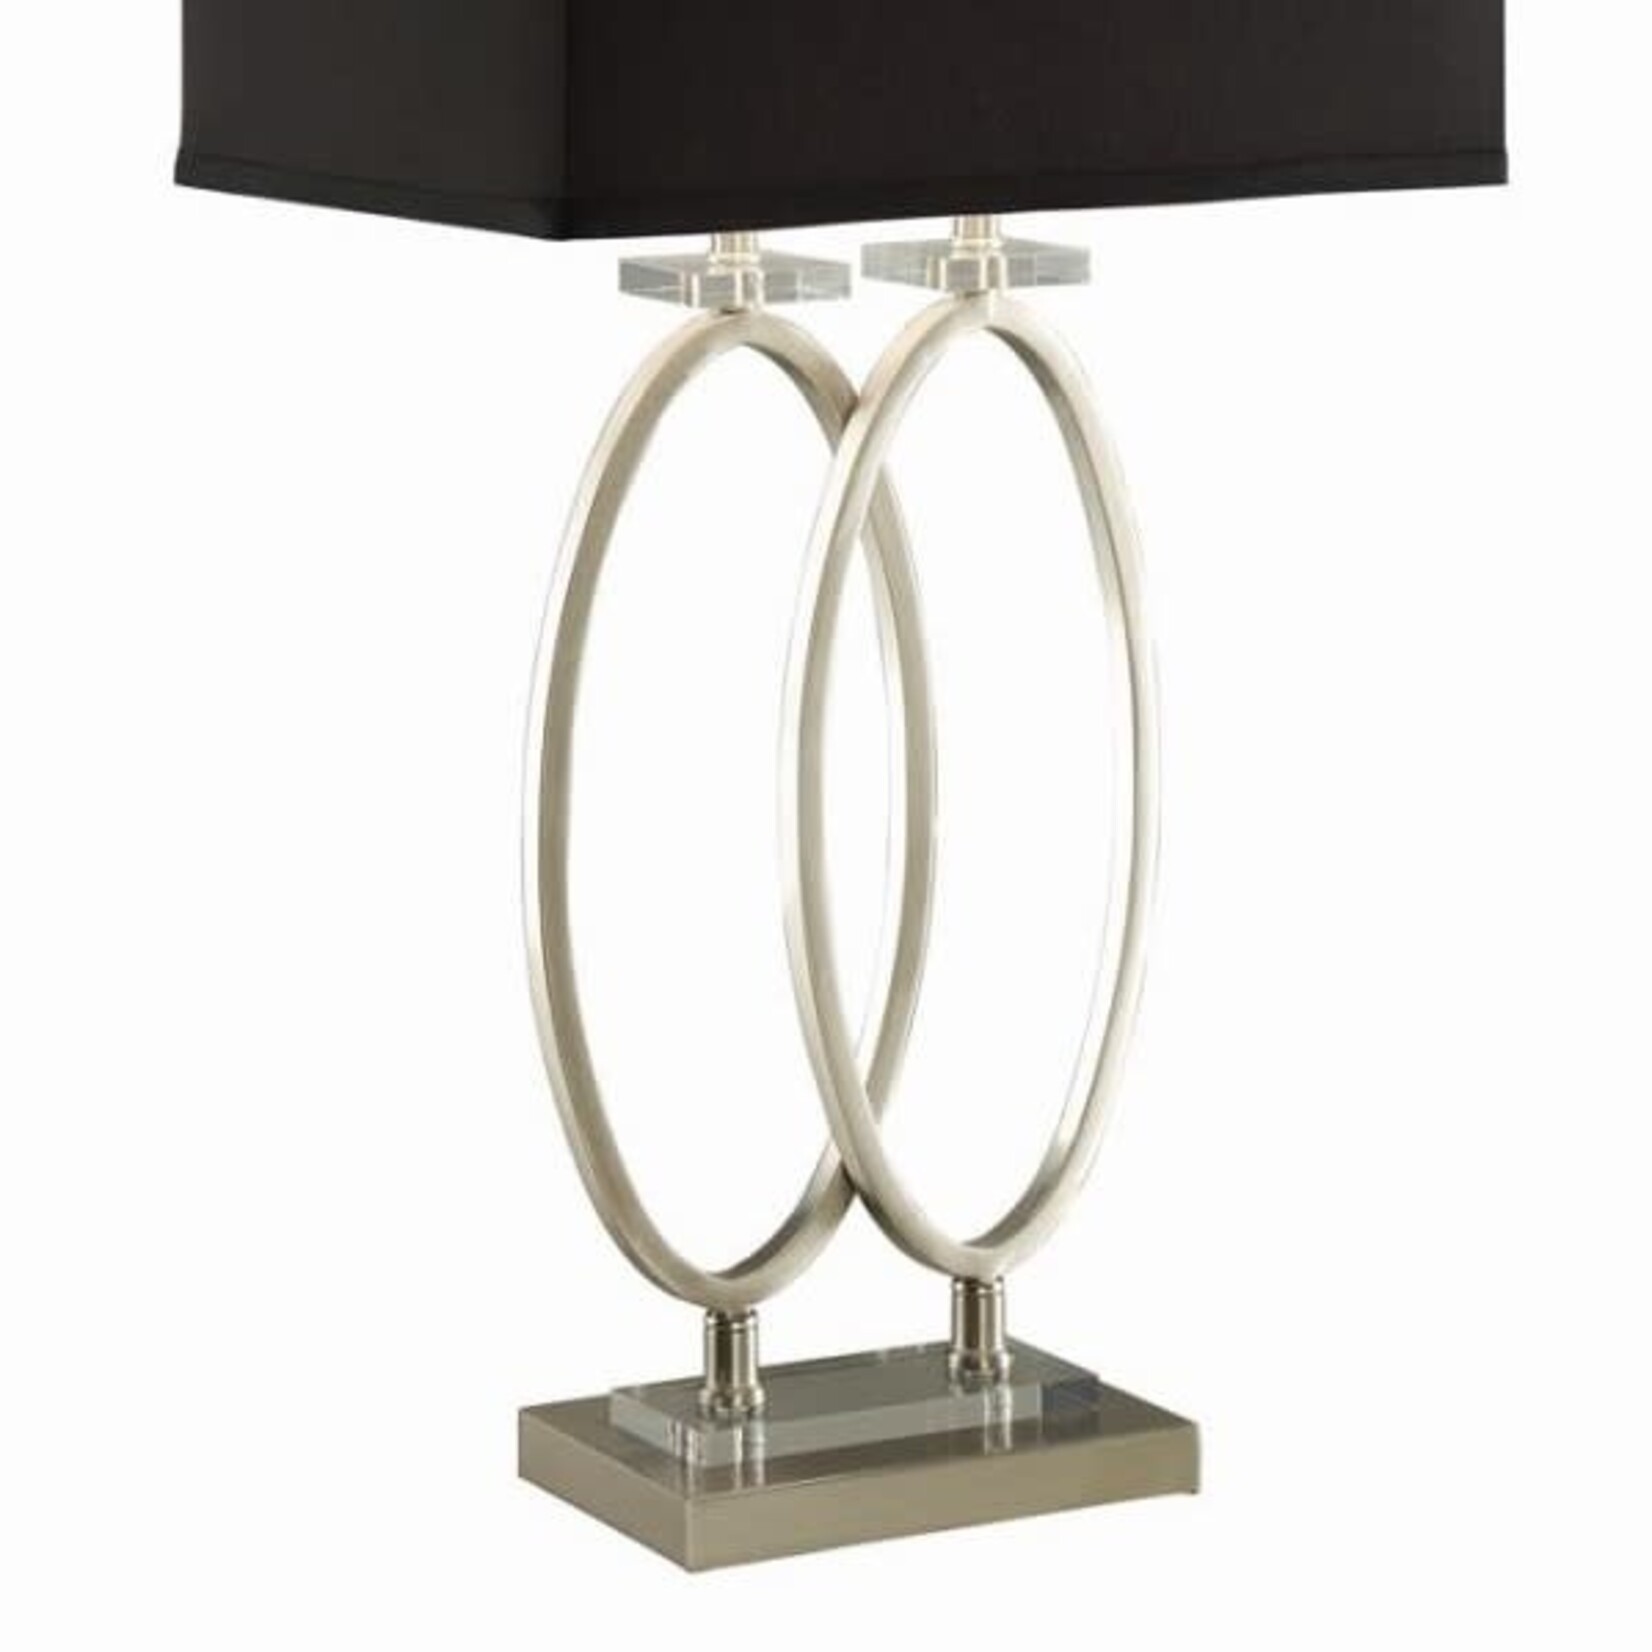 Coaster Furniture 901662 Izuku Table Lamp Black Rectangular Shade Brushed Nickle